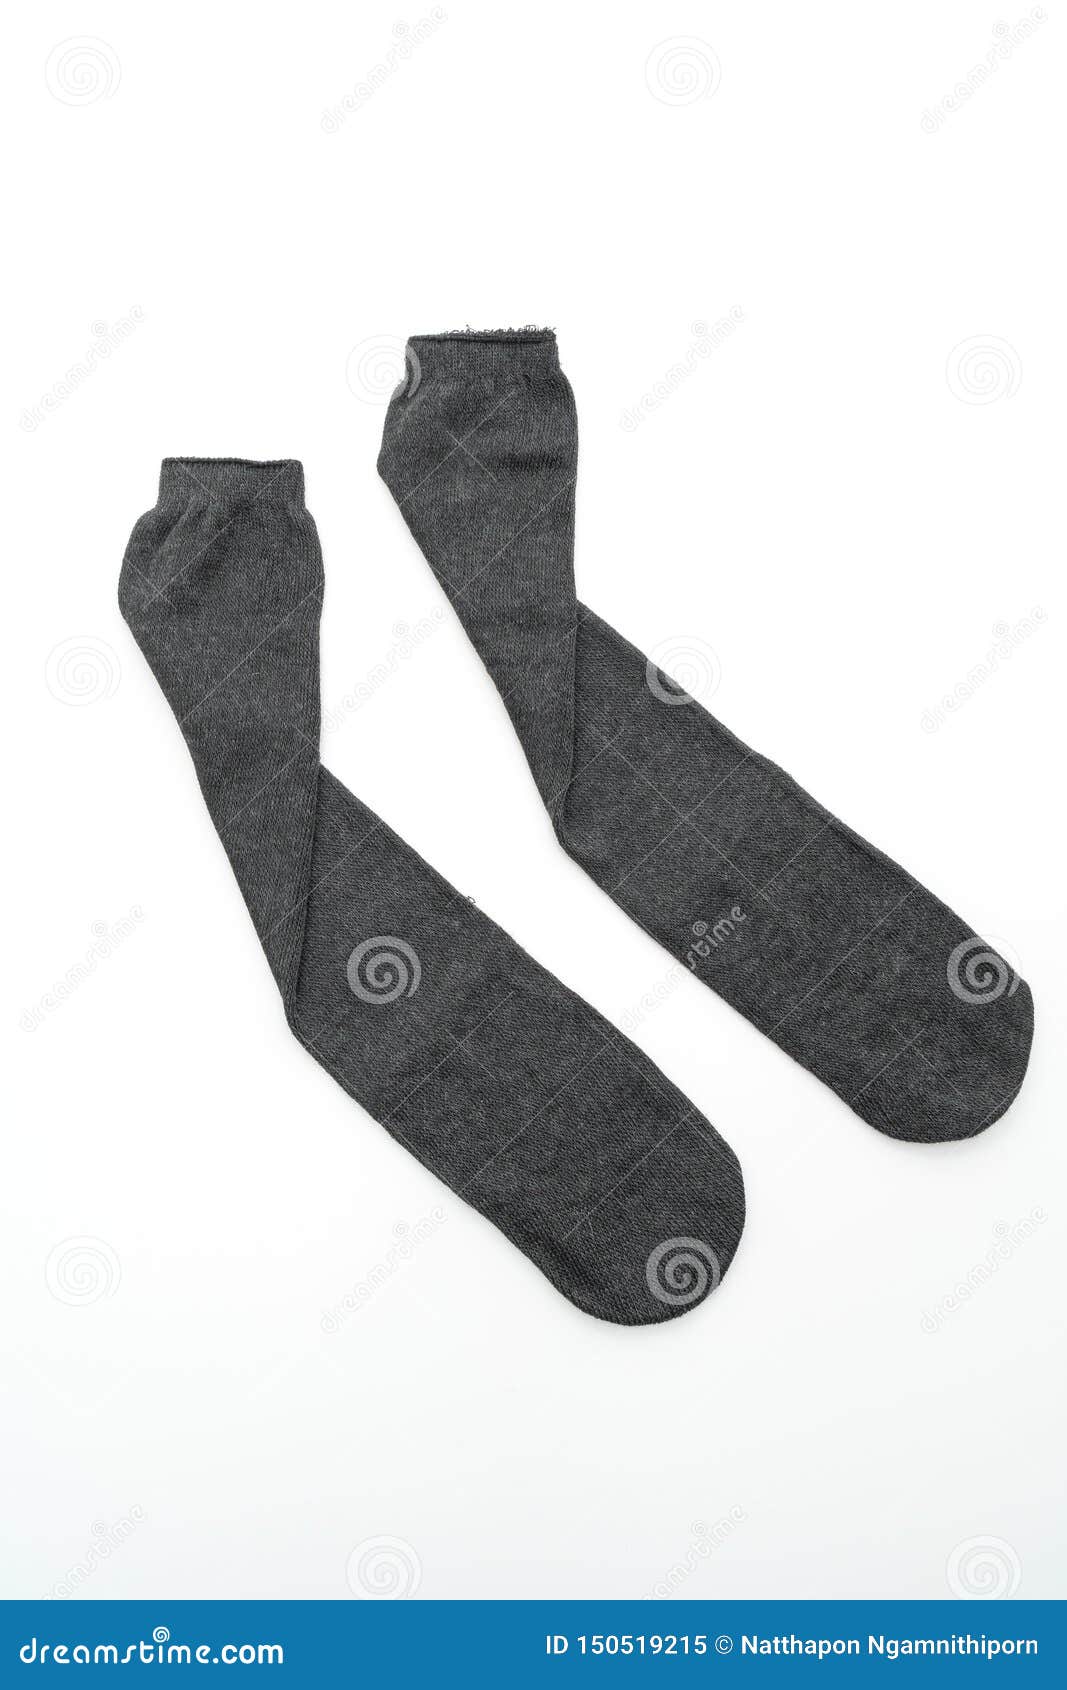 Black Socks on White Background Stock Image - Image of grey, design ...